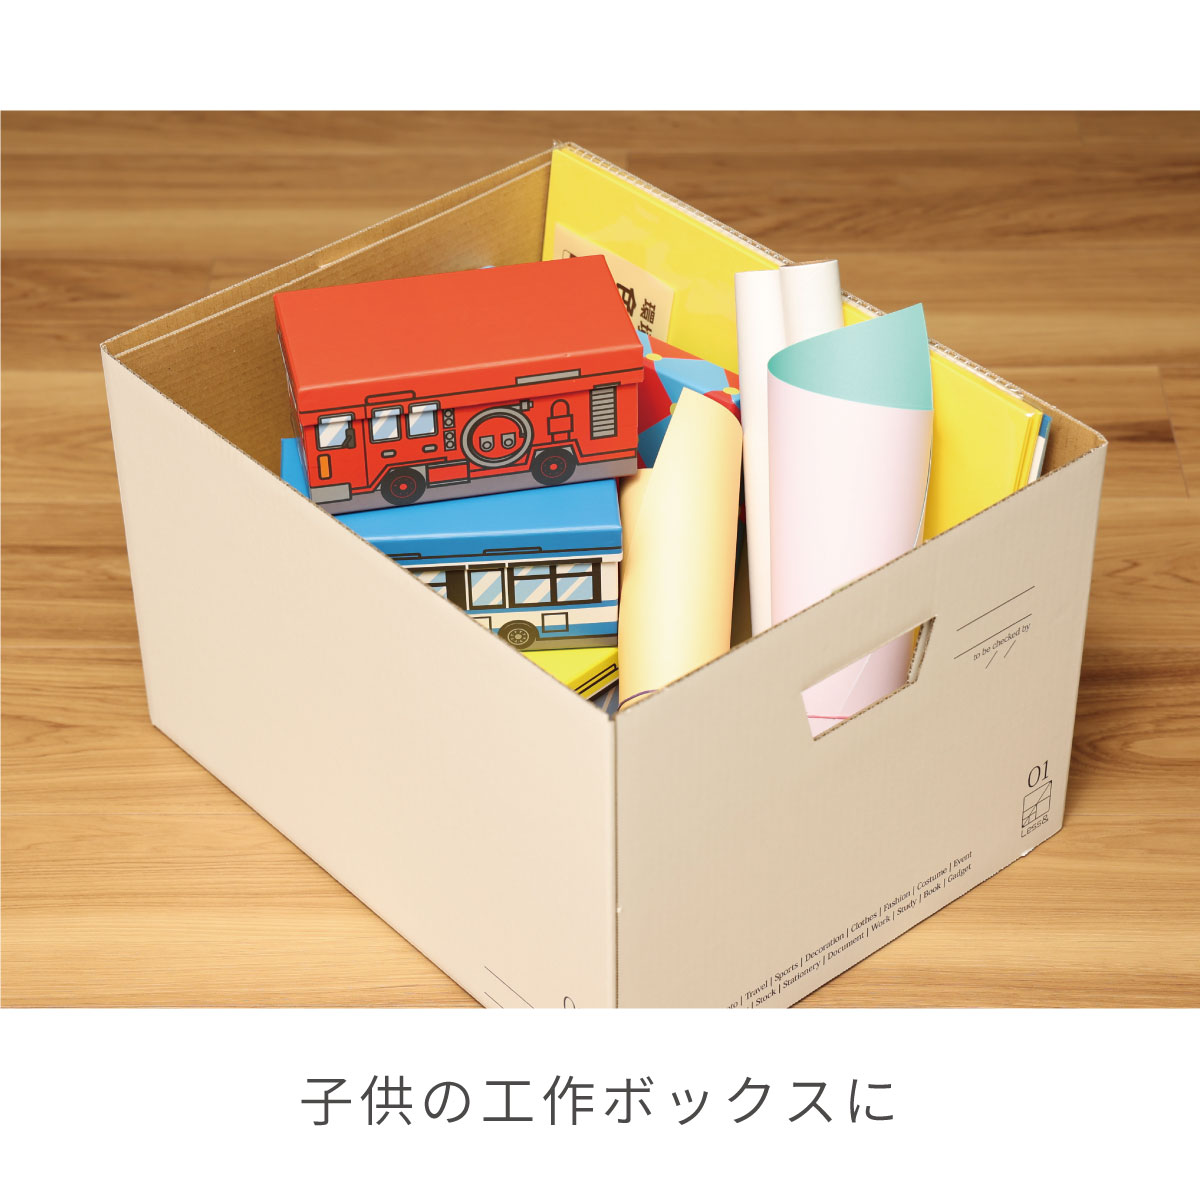 アドバイザーズボックス 3個組 お片付けコンシェルジュ 魔法のボックス A4ファイル 収納 ケース フタ付き ダンボール 段ボール クラフトボックス  日本製